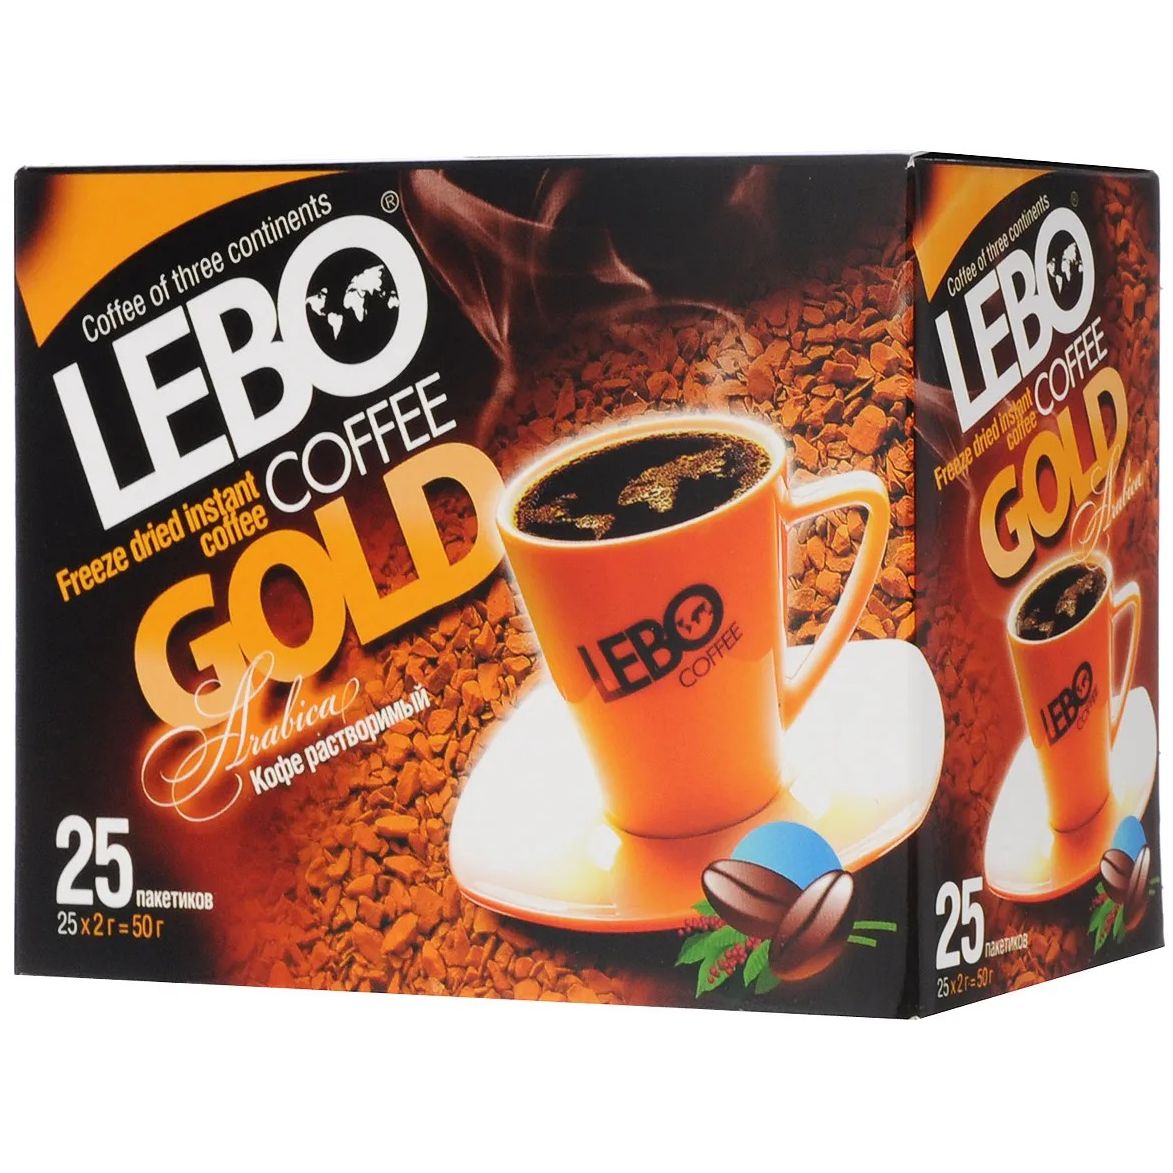 Качество кофе в россии. Кофе Лебо Голд. Кофе Лебо растворимый. Кофе Lebo Gold 2 гр. *25 растворимый. Кофе Лебо Голд стекло.